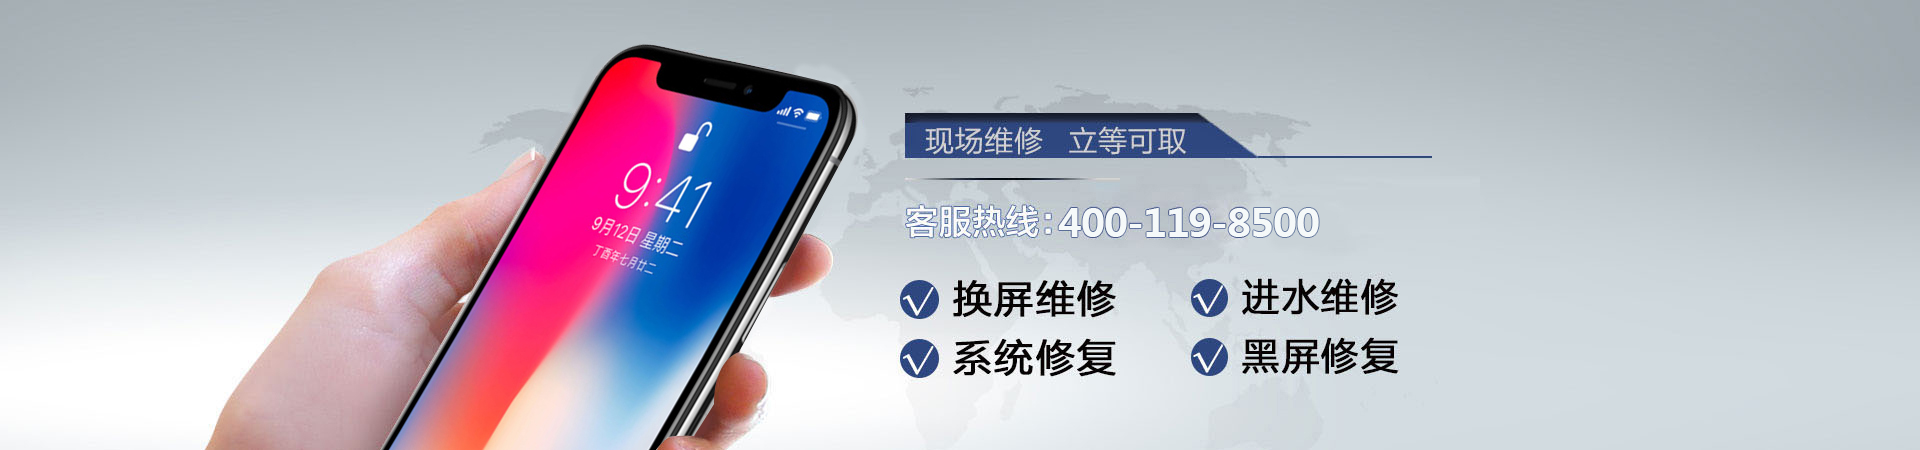 深圳苹果手机维修服务地址查询